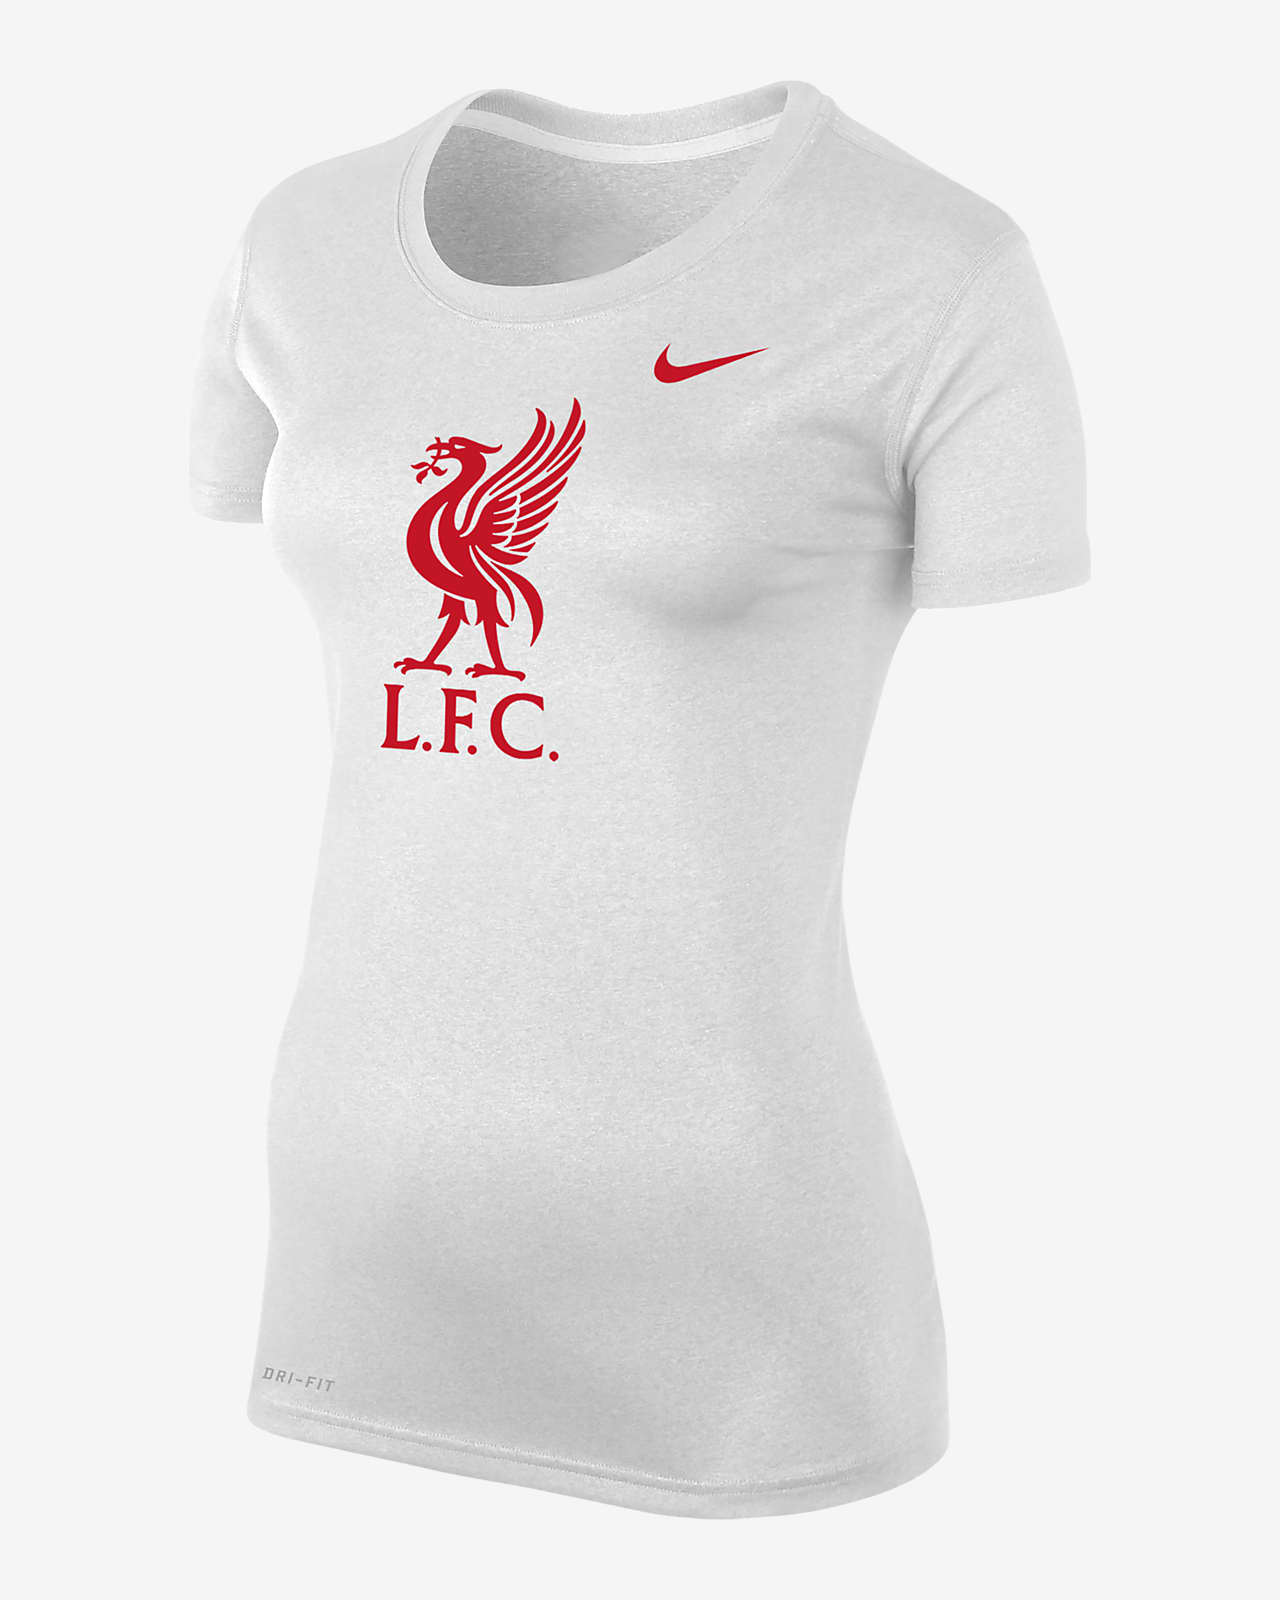 Liverpool Women's Nike Dri-FIT T-Shirt